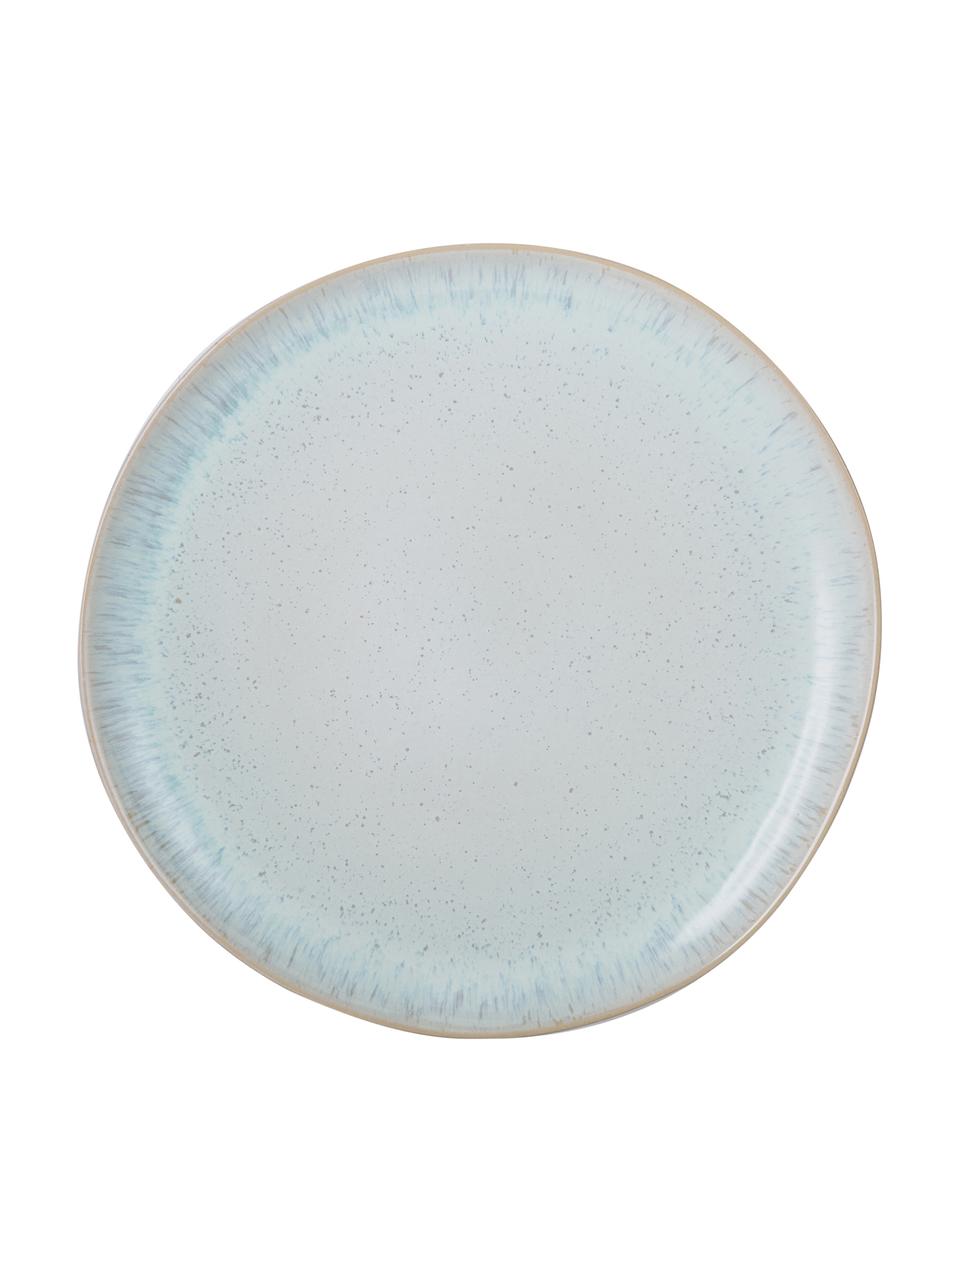 Assiette plate peinte à la main Areia, Bleu ciel, blanc cassé, beige clair